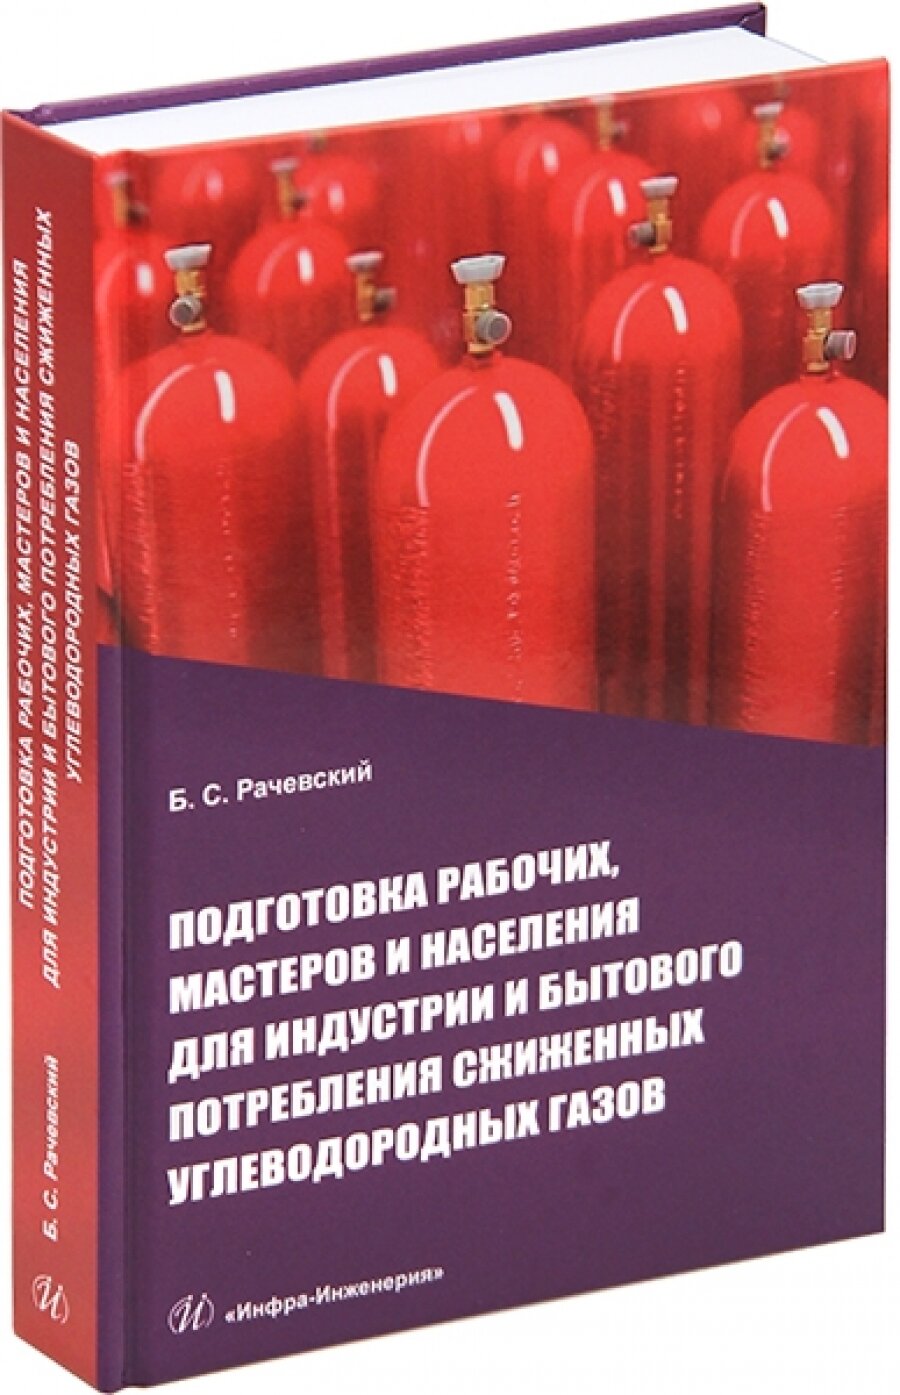 Подготовка рабочих,мастеров и населения для индустрии и бытового потребления сжиженных углевод.газов - фото №3